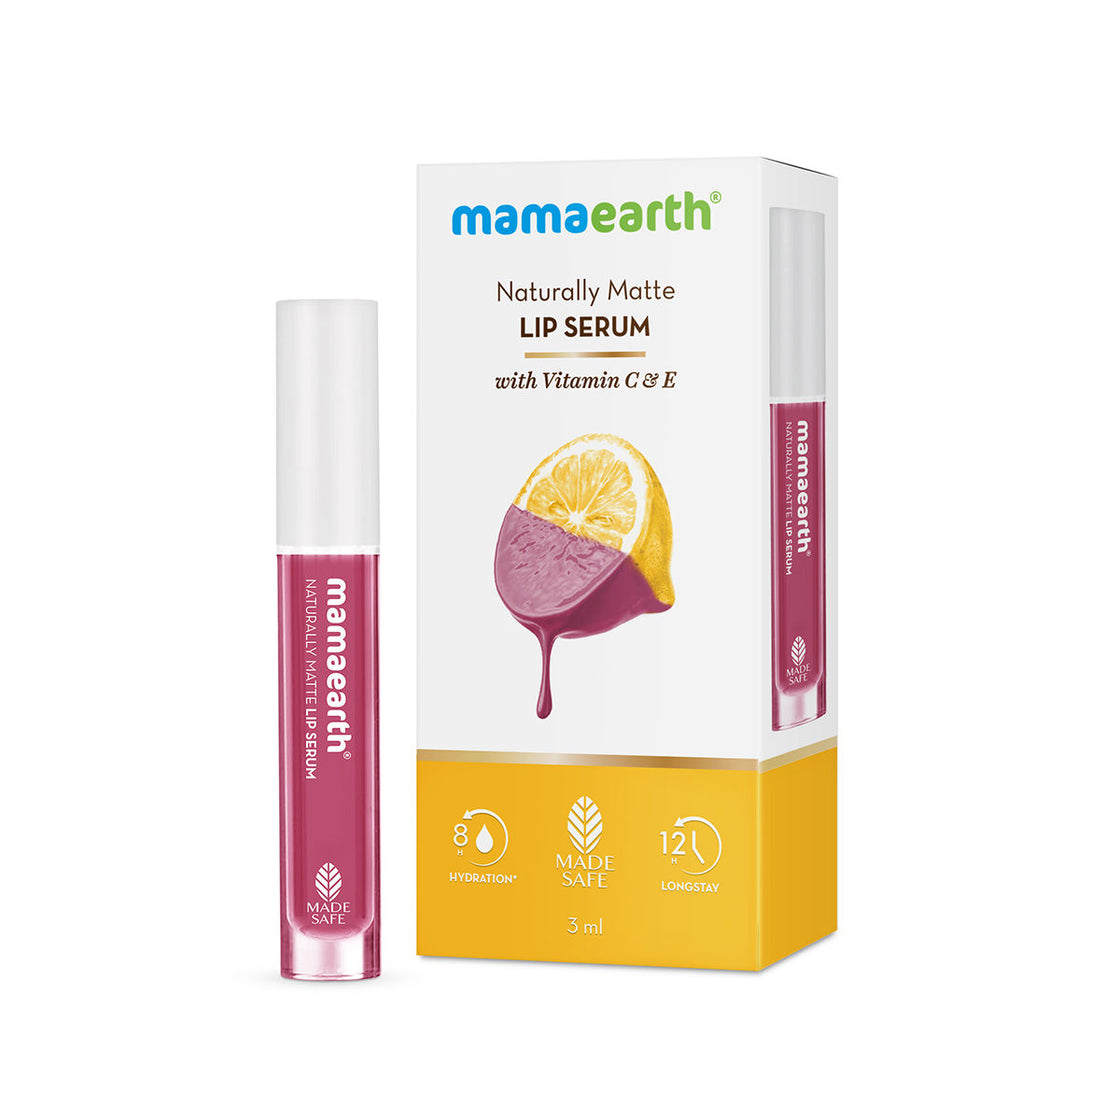 Mamaearth Naturally Matte Lip Serum - Matte Liquid Lipstick With Vitamin C & E-2